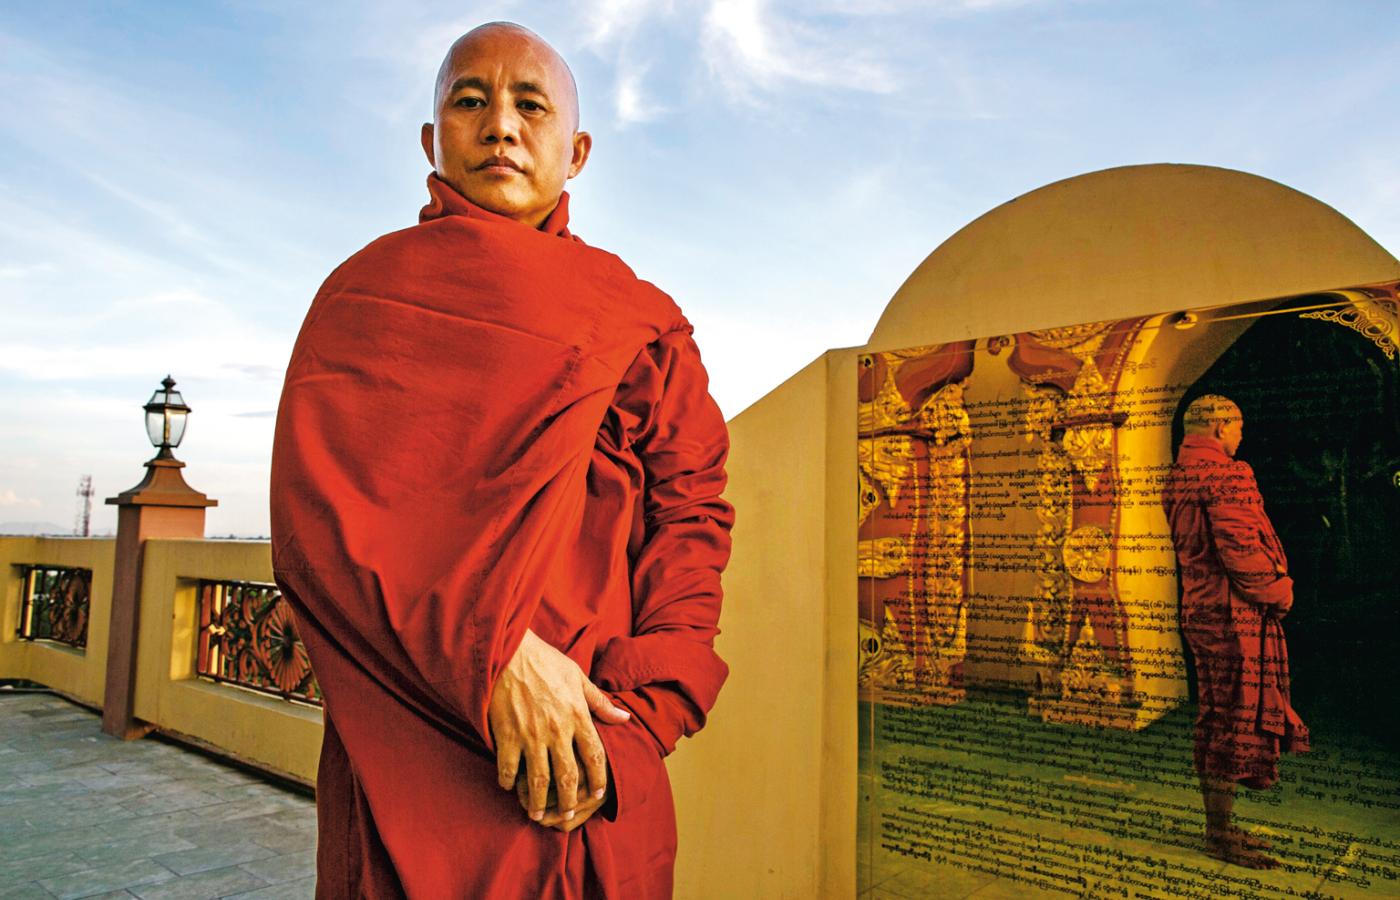 Ashin Wirathu - rośnie popularność tego buddyjskiego siewcy religijnej i rasowej nienawiści.